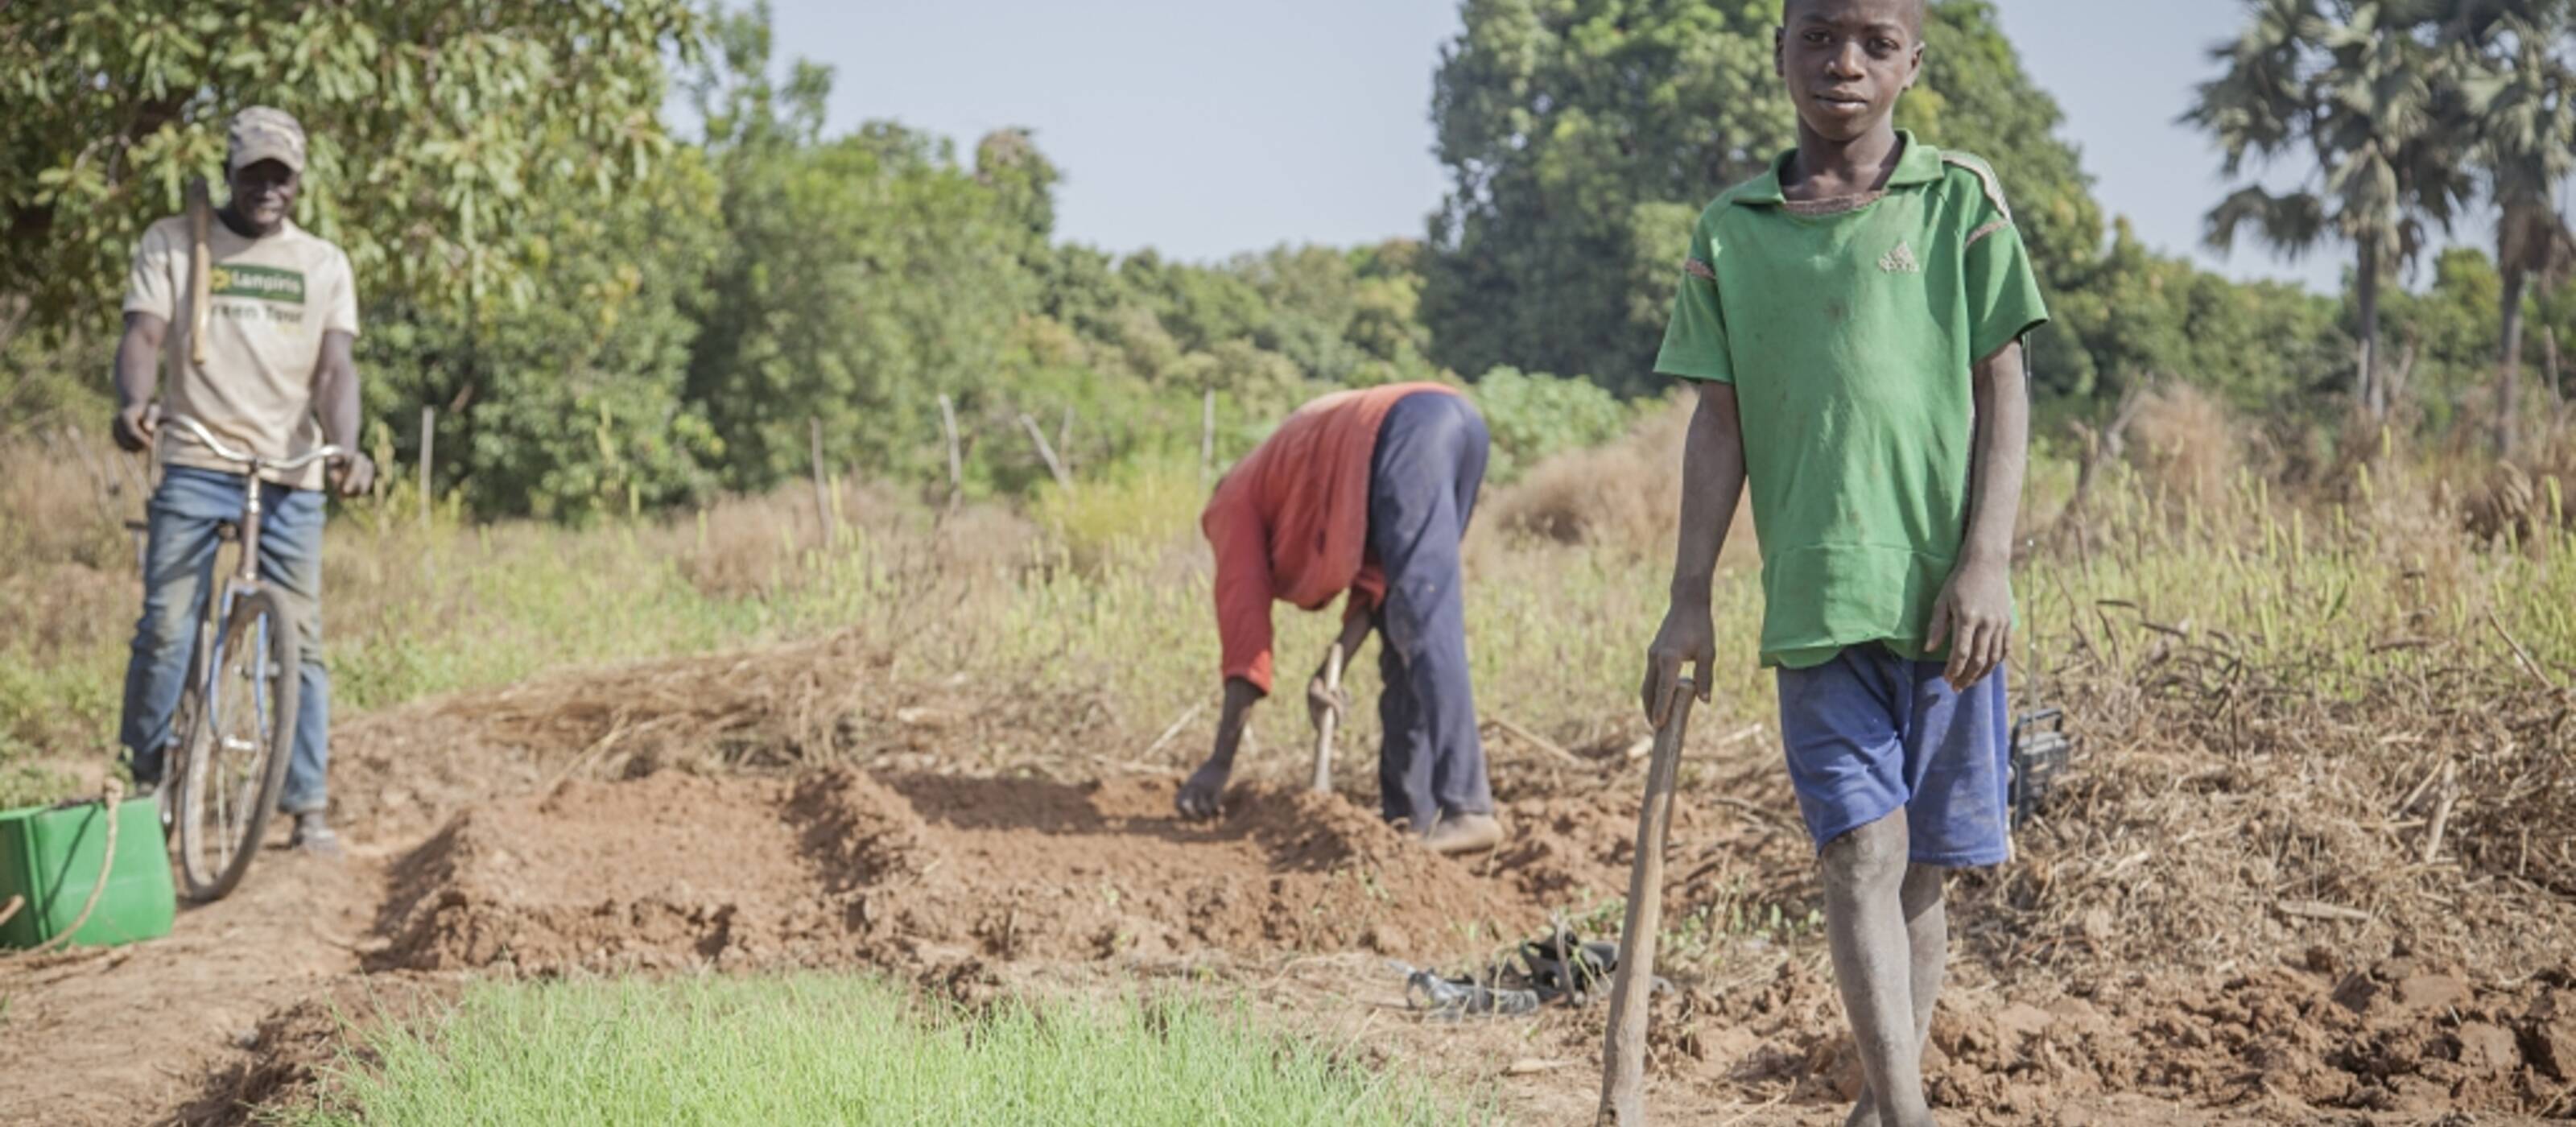 Sécurité alimentaire malgré le changement climatique - culture écologique en Ouganda